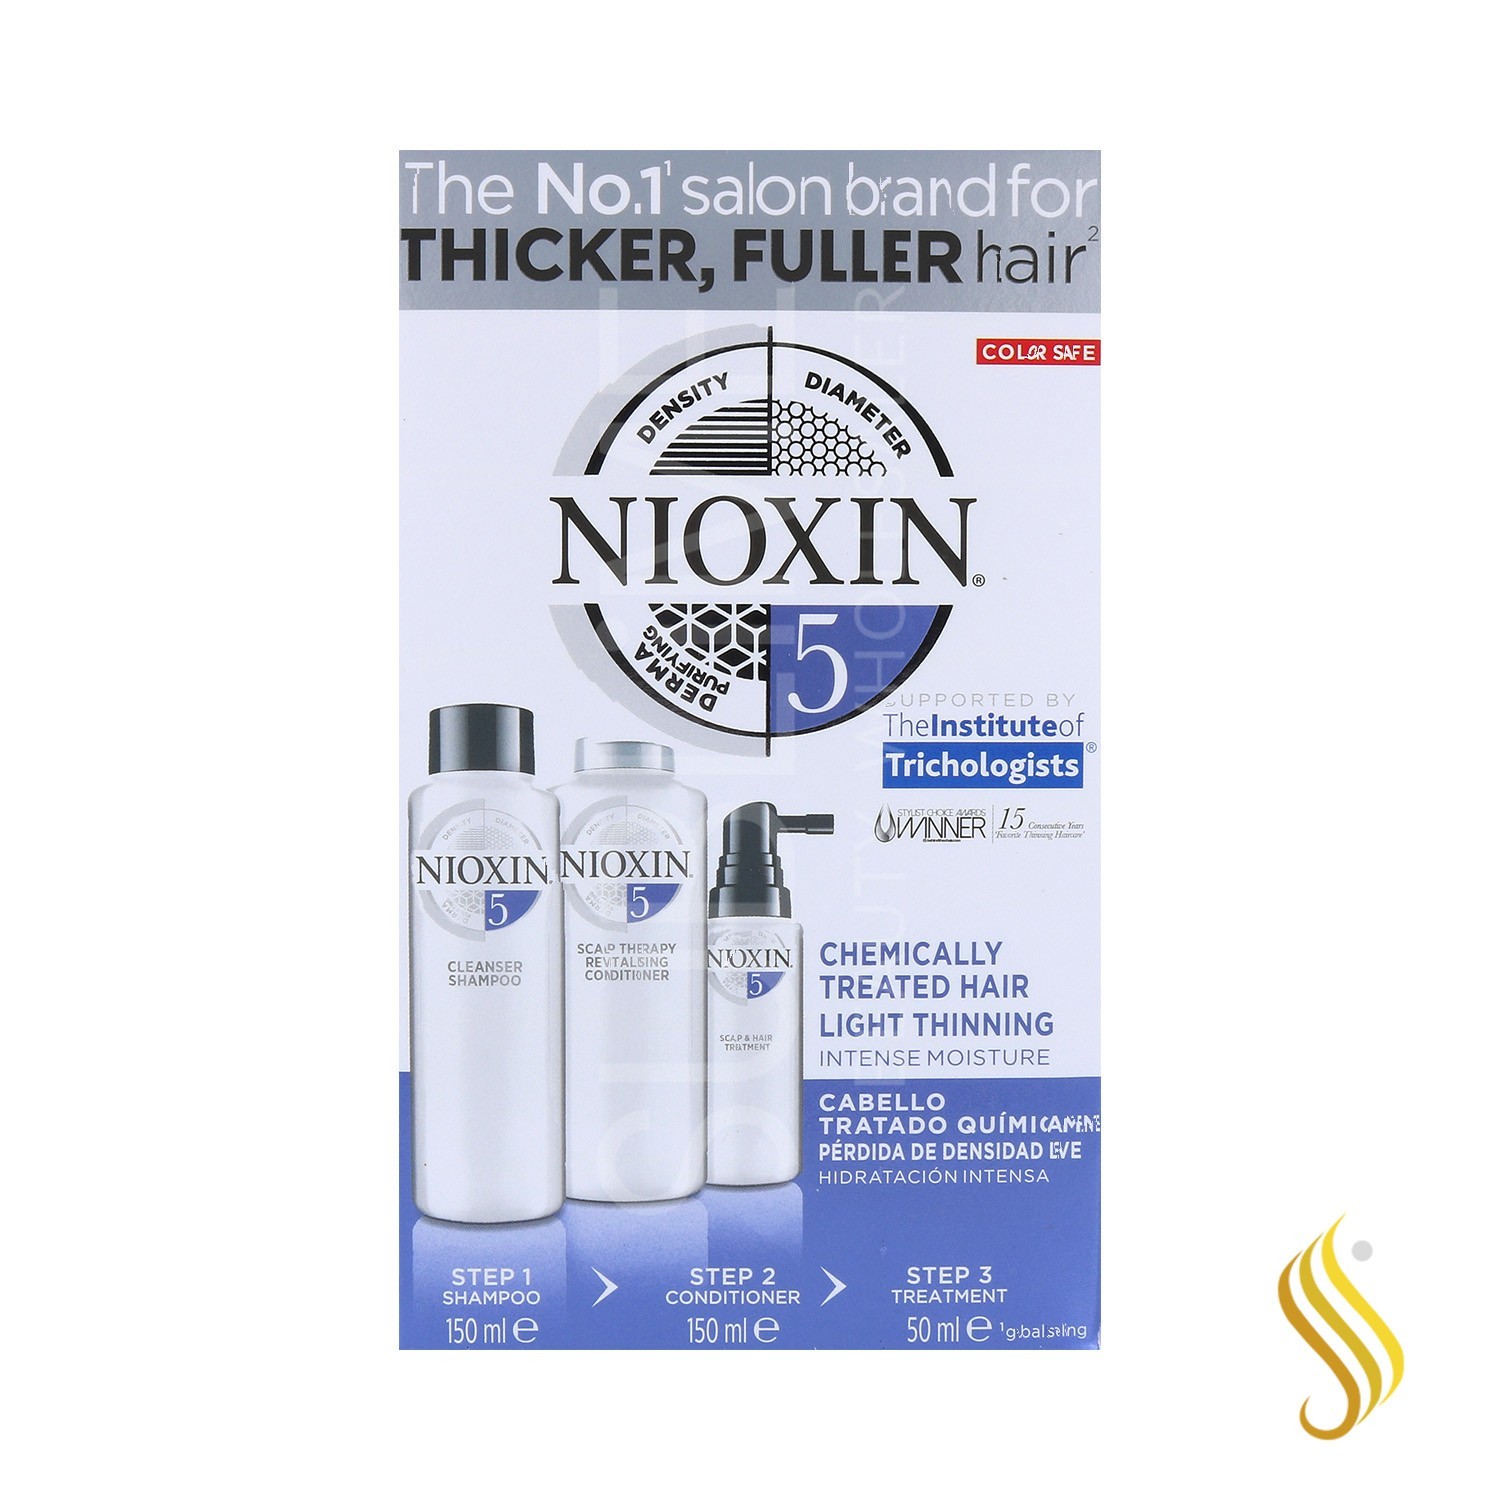 Nioxin Trial Kit System 5 Cabelo com tratamento suave